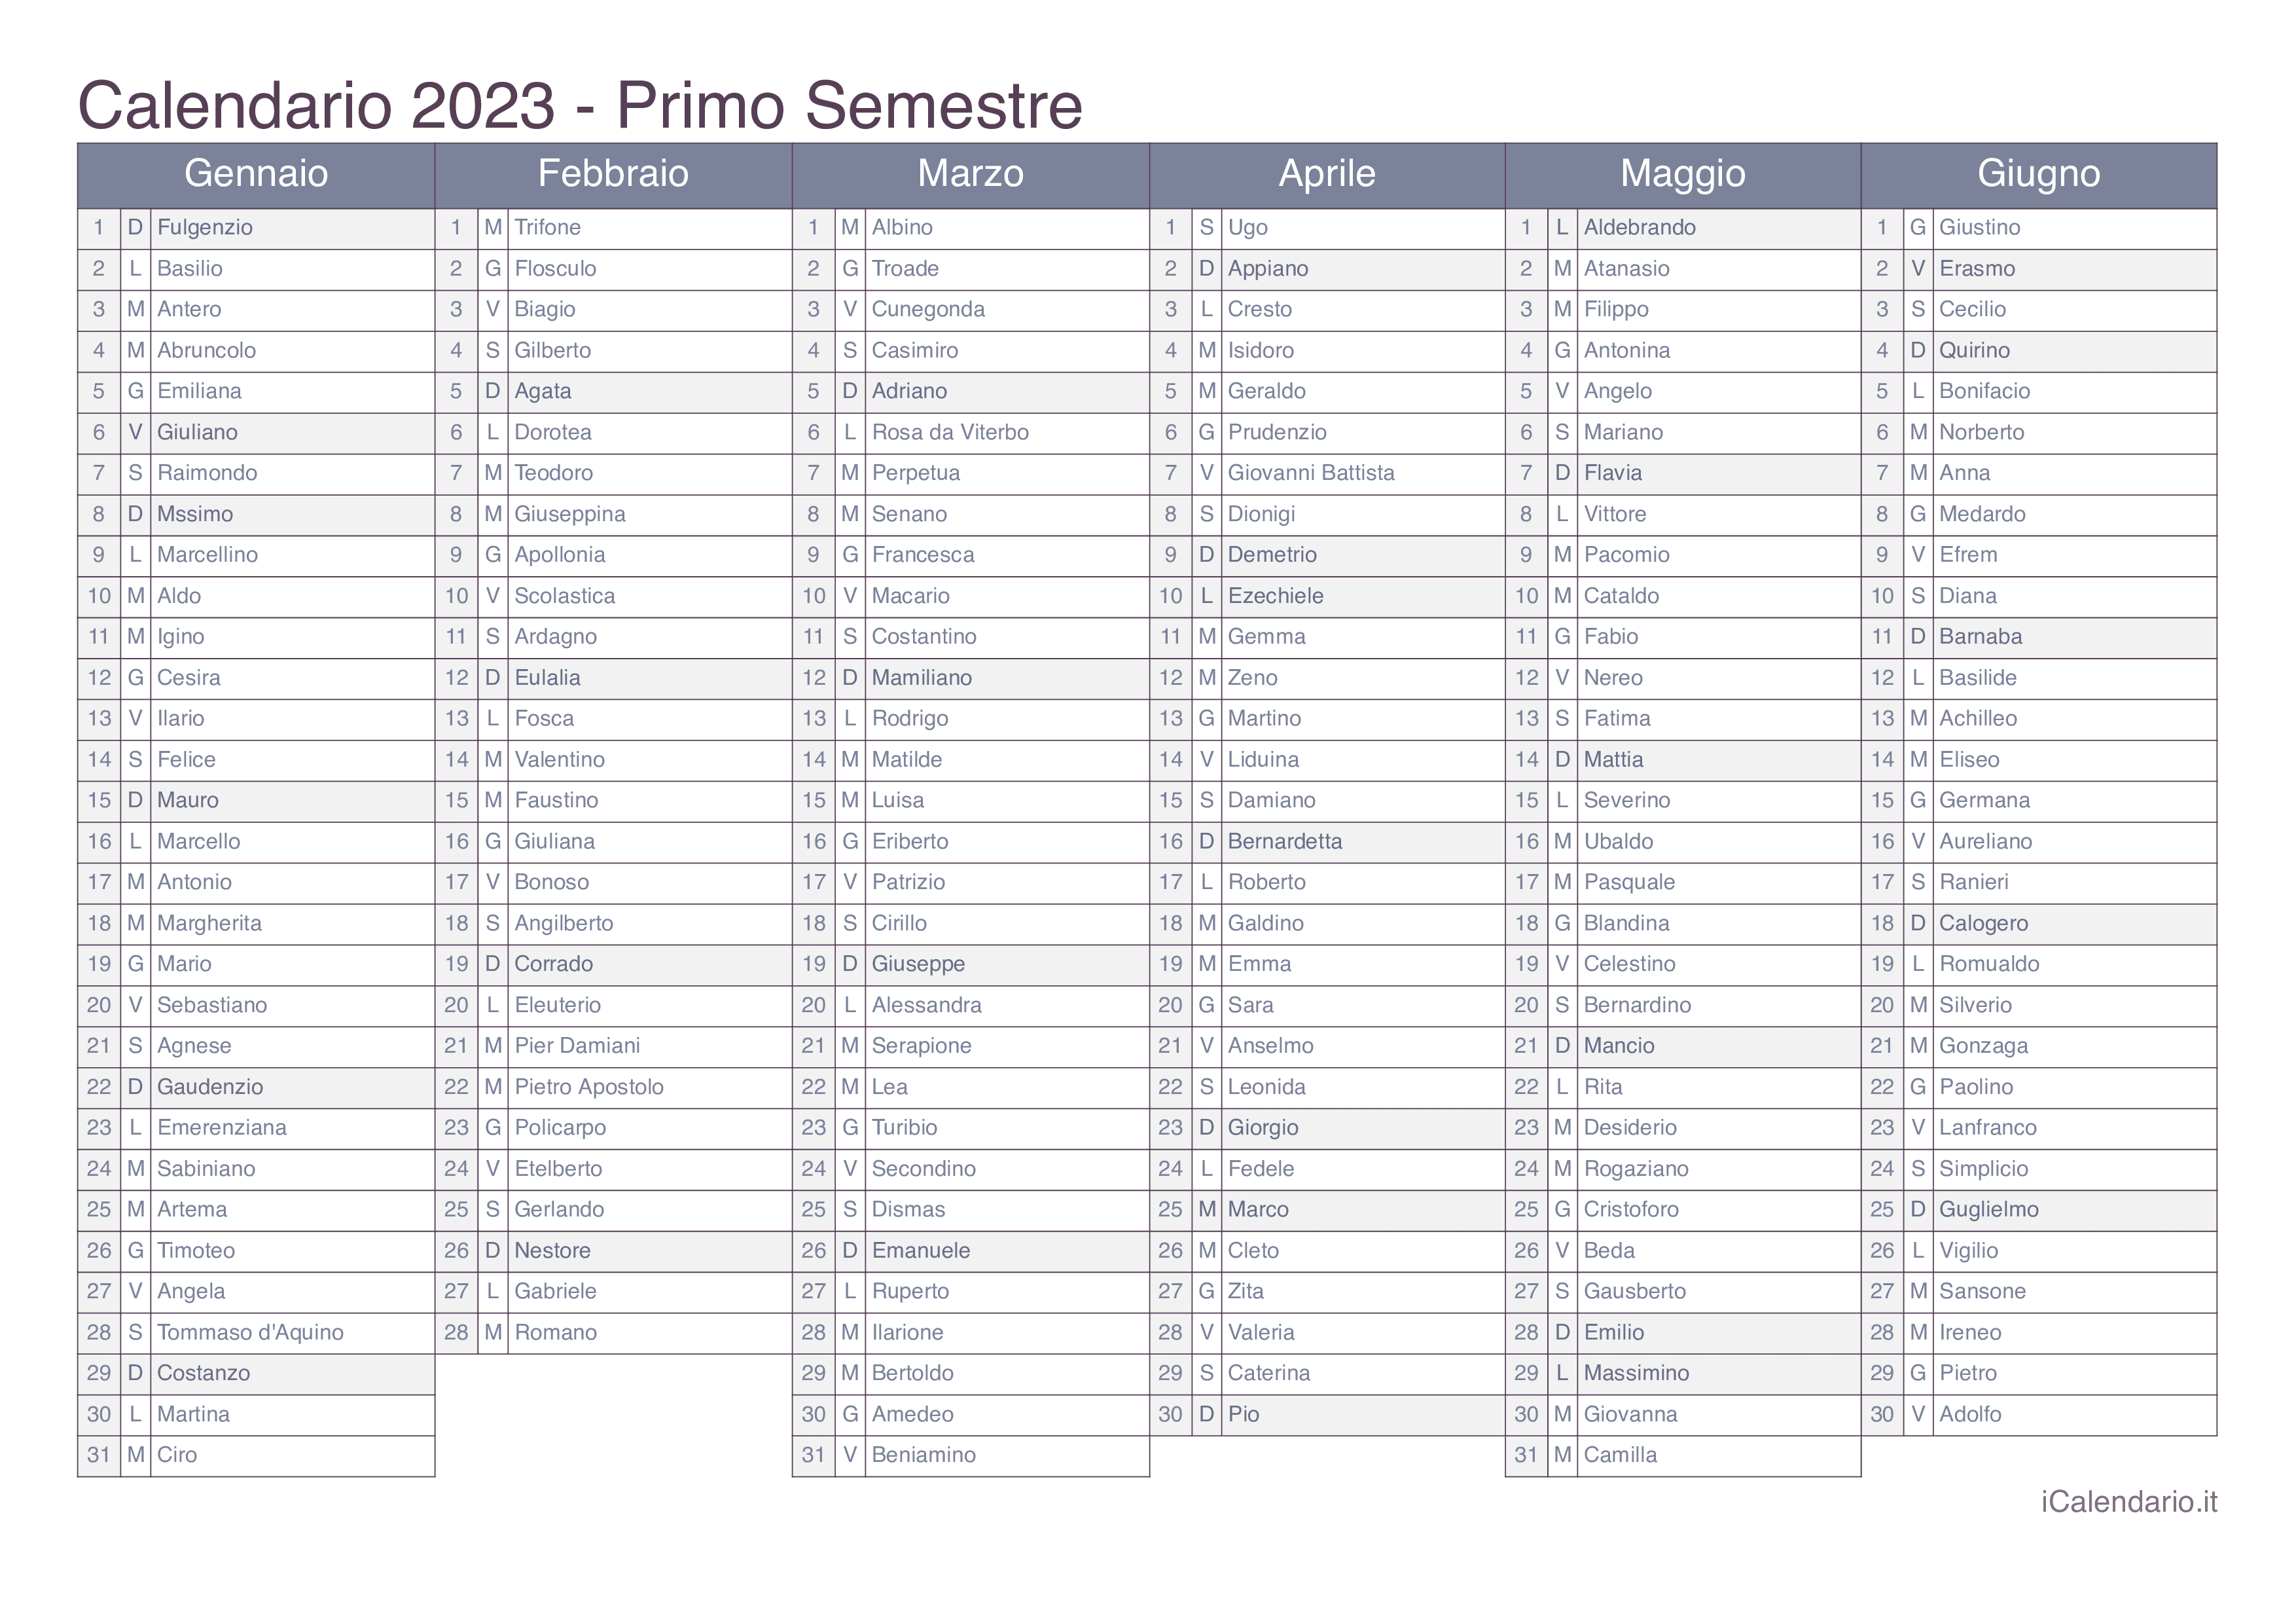 Calendario semestrale 2023 con santi e festivi - Office